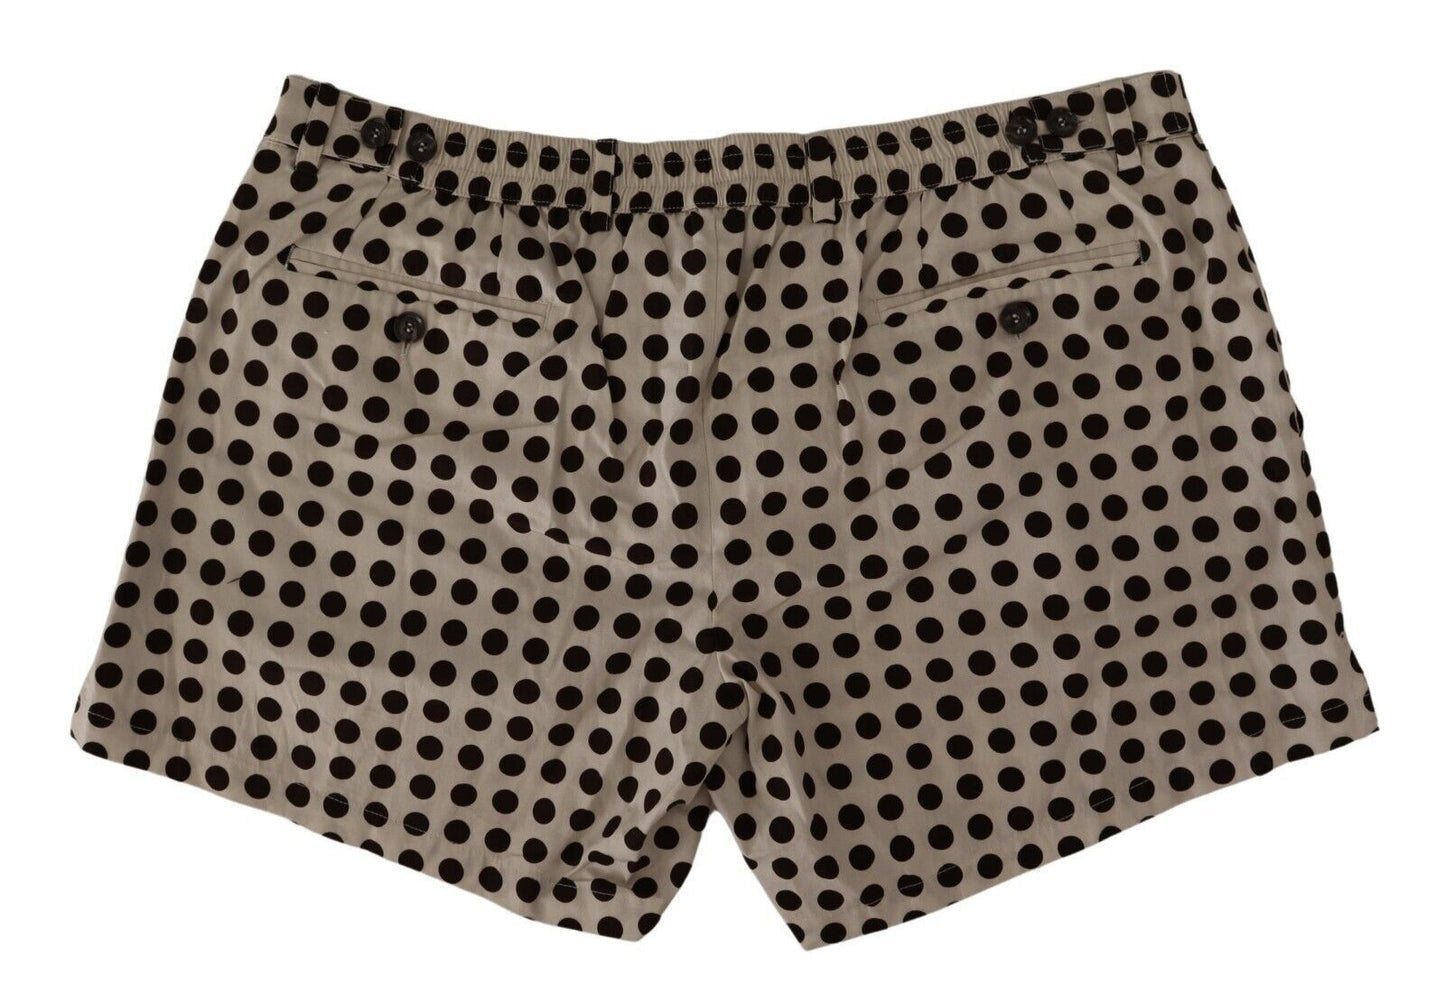 Dolce & Gabbana Black White Polka Dots Cotton Linen Shorts